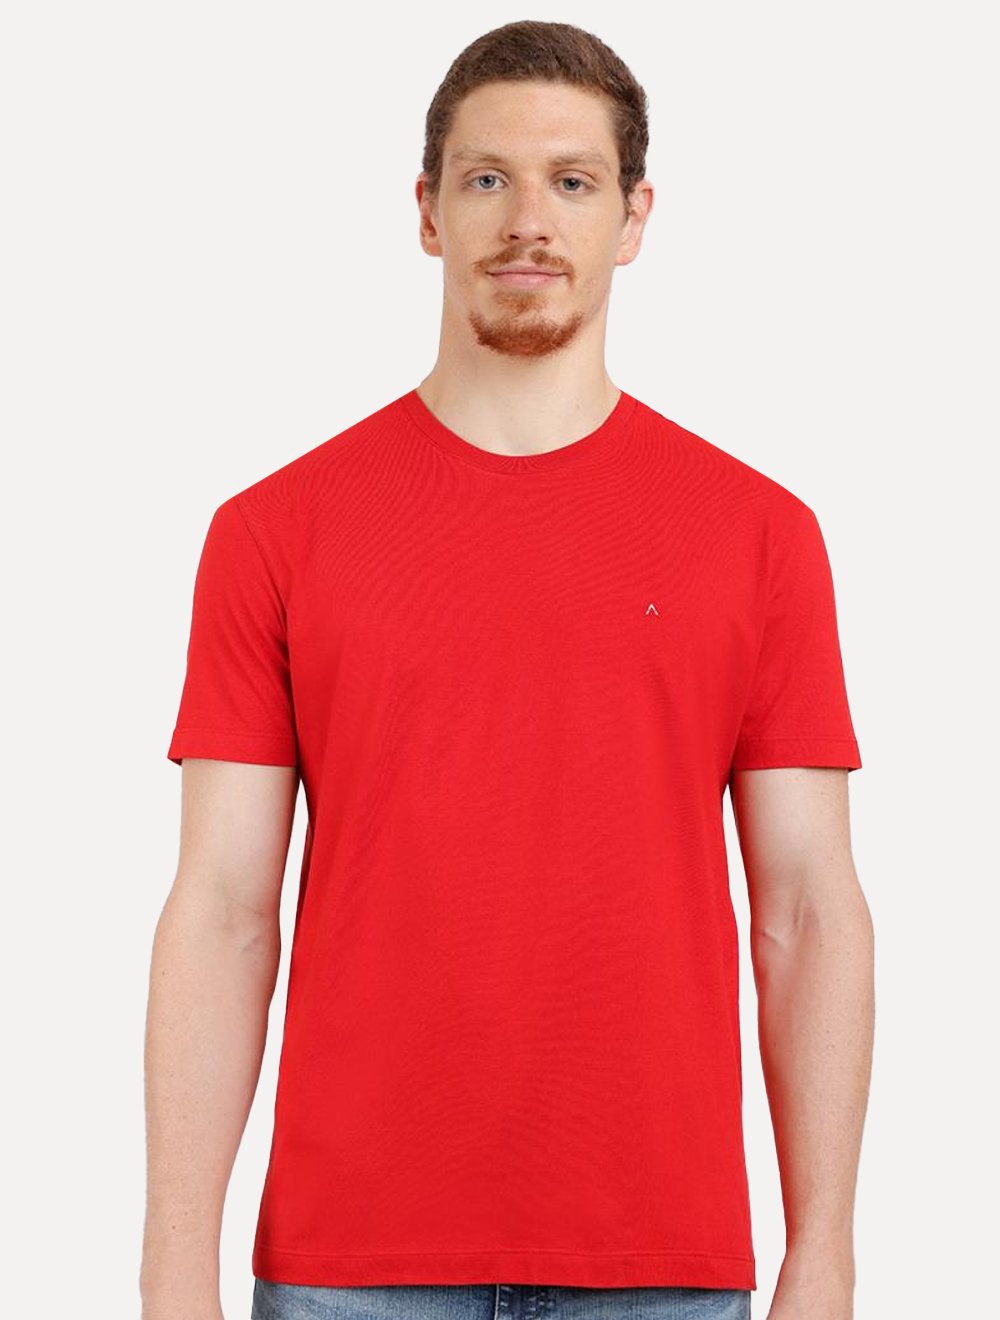 Camiseta Aramis Masculina Basic Lisa Vermelha